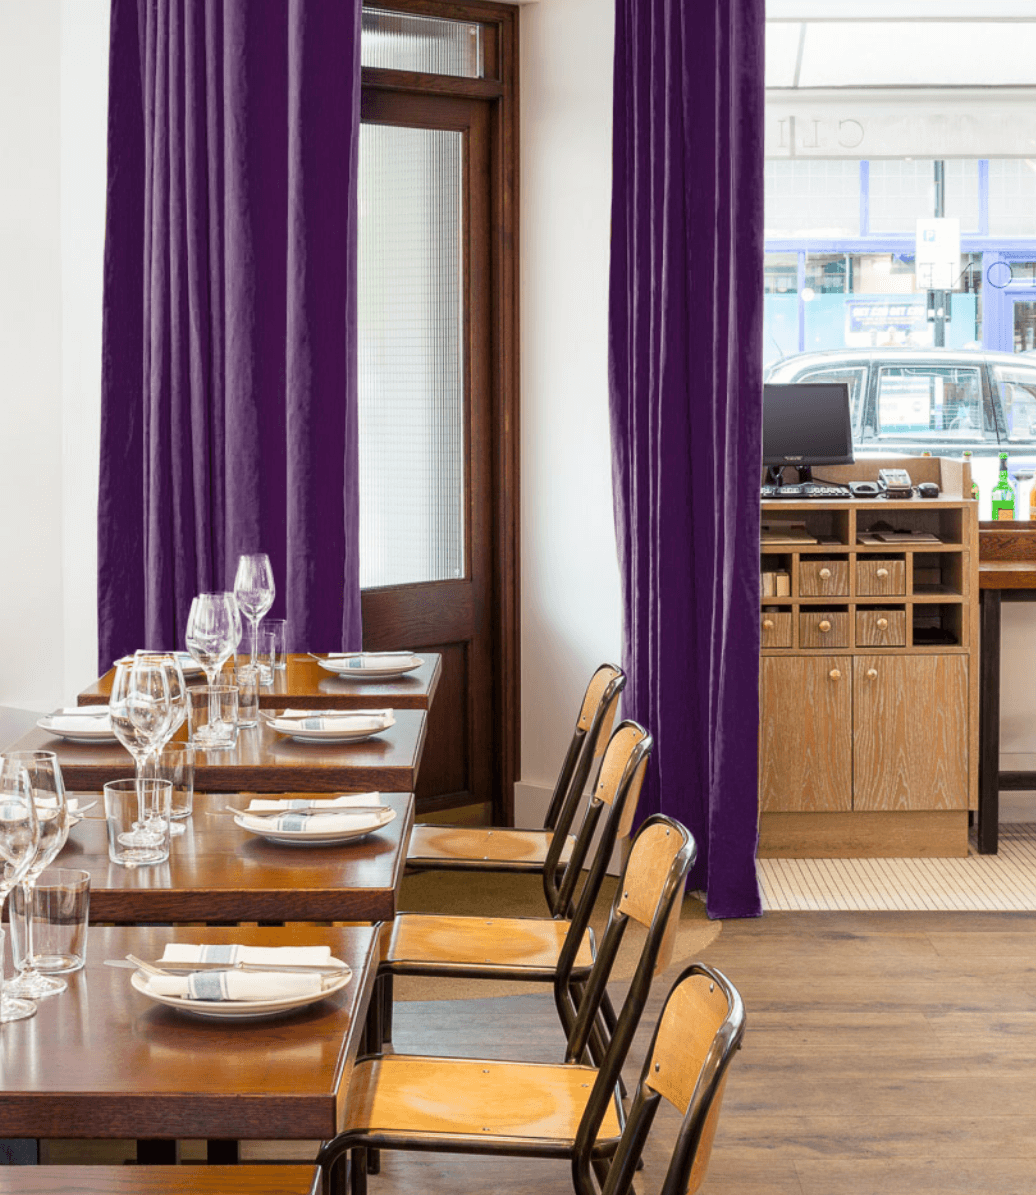 Restaurant Interior Dining Room